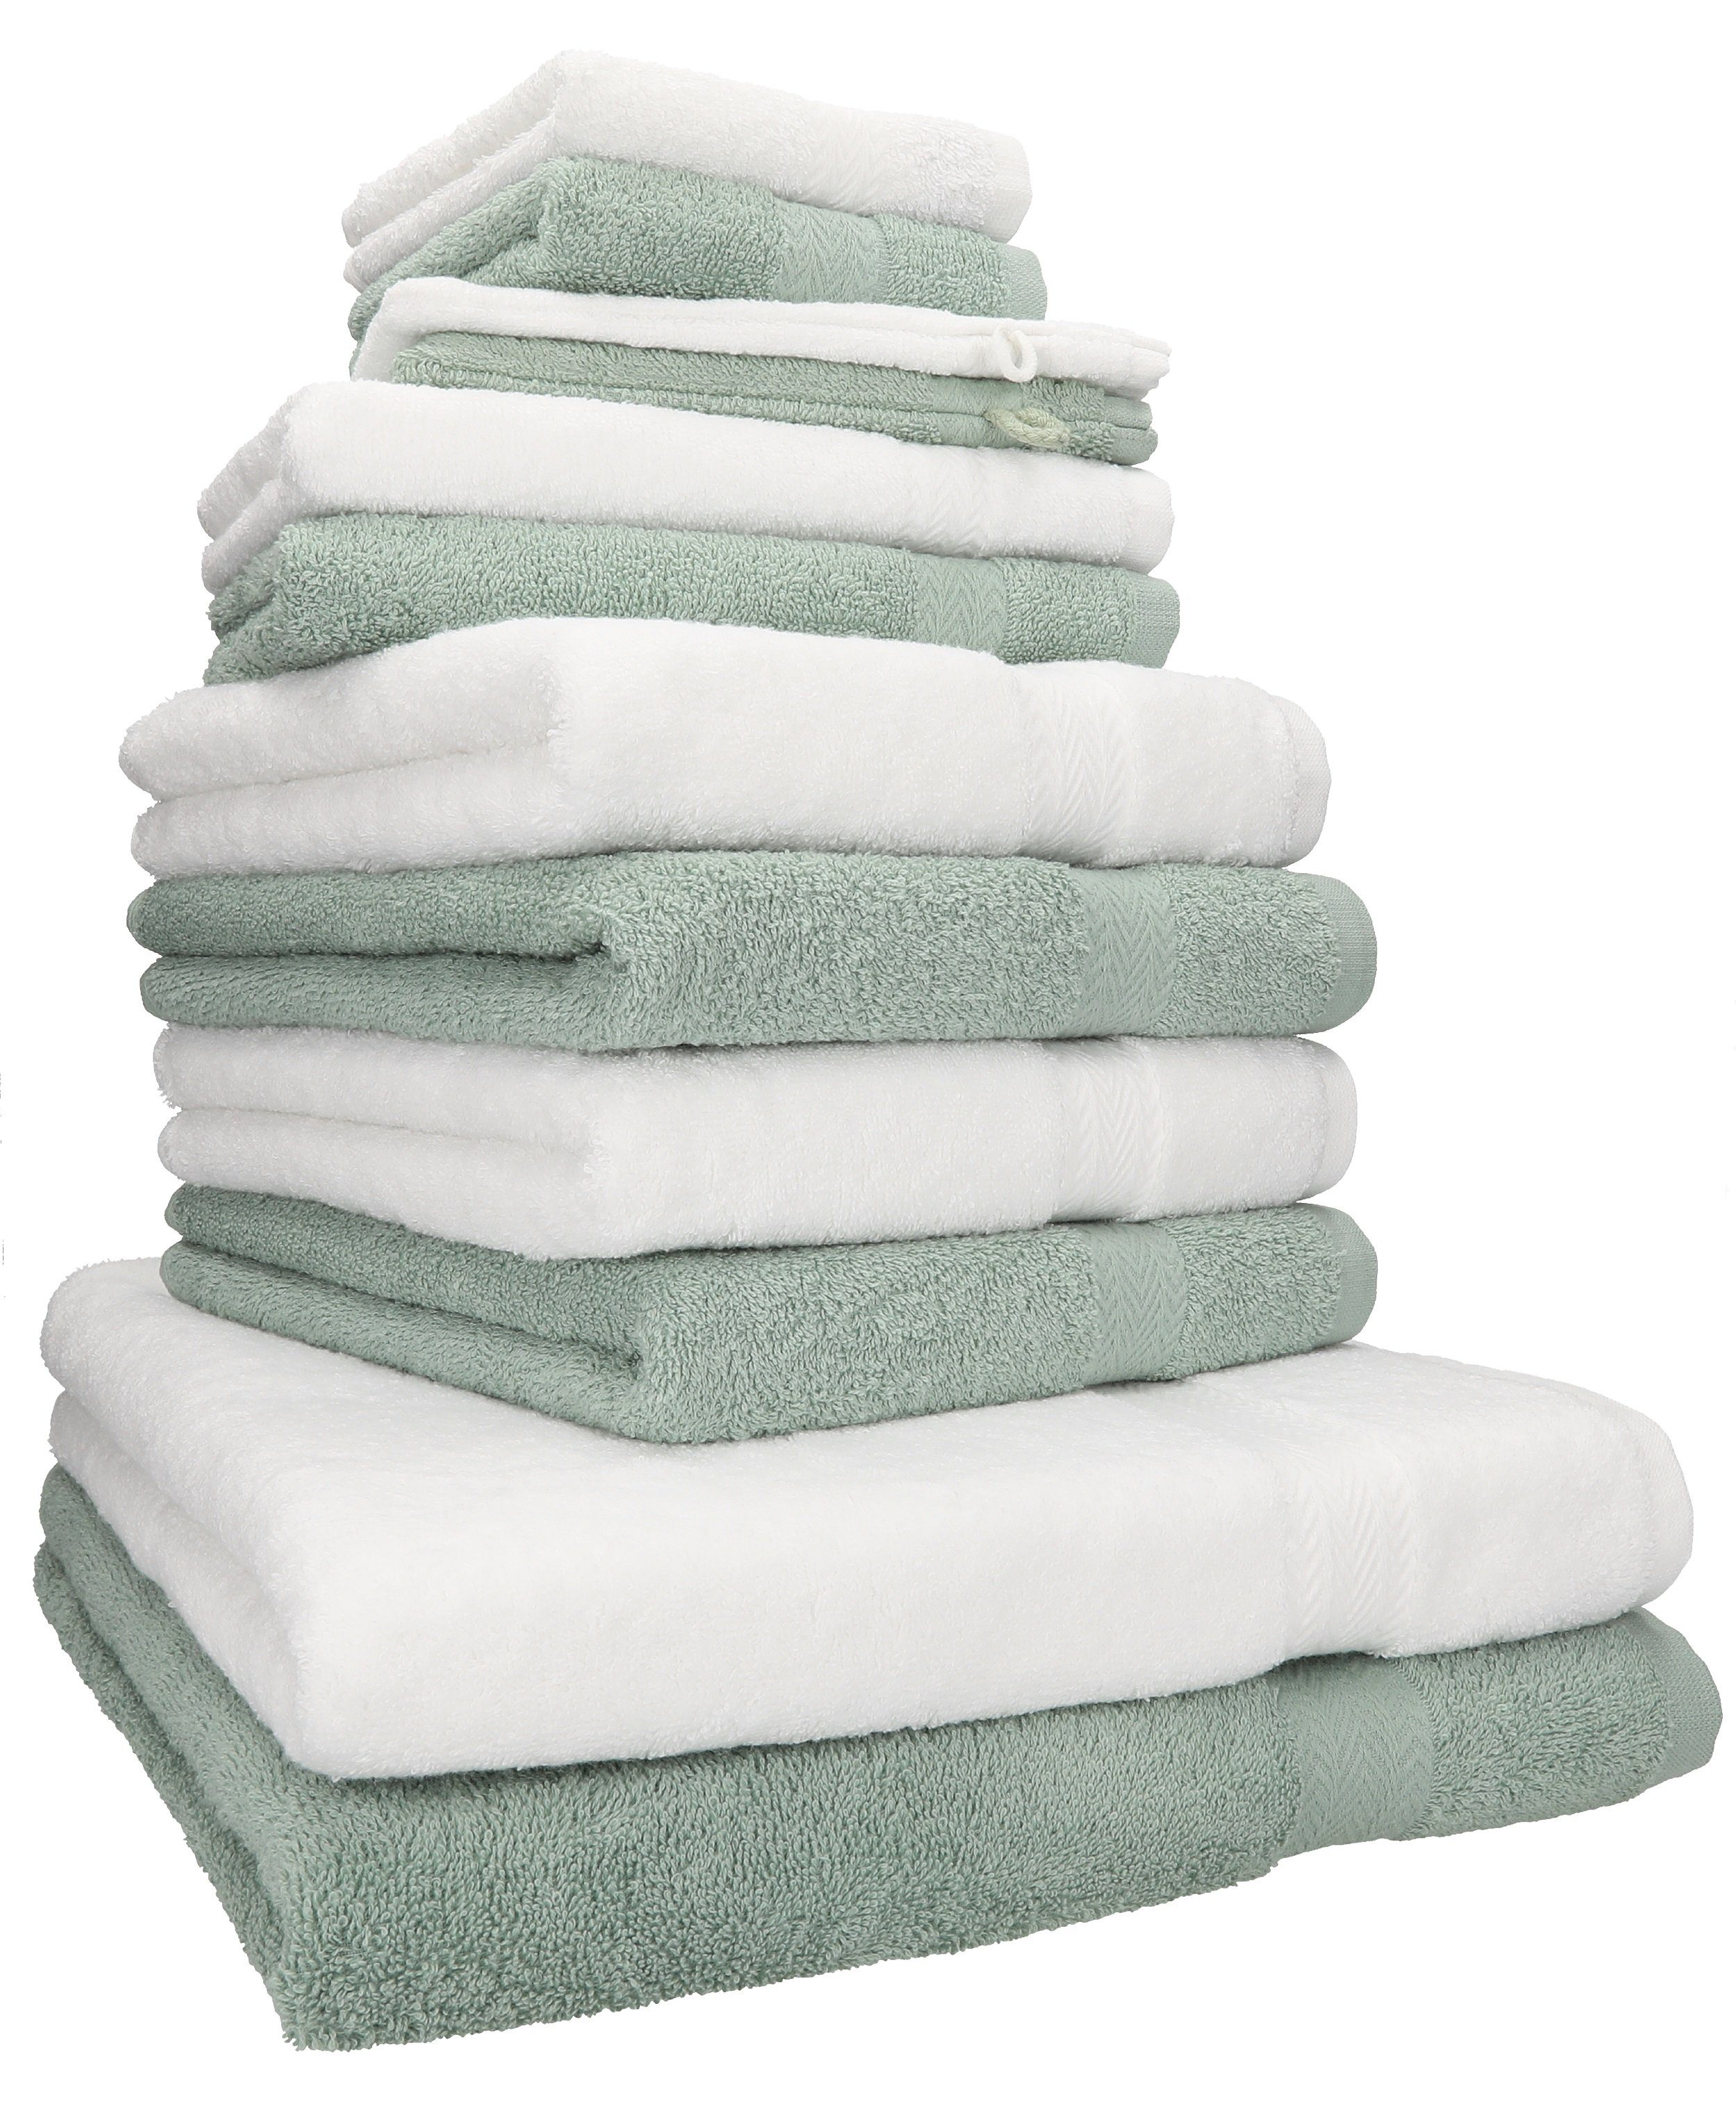 Betz Handtuch Set Premium Set weiß/heugrün, 12-TLG. Baumwolle, Farbe 100% (12-tlg) Handtuch